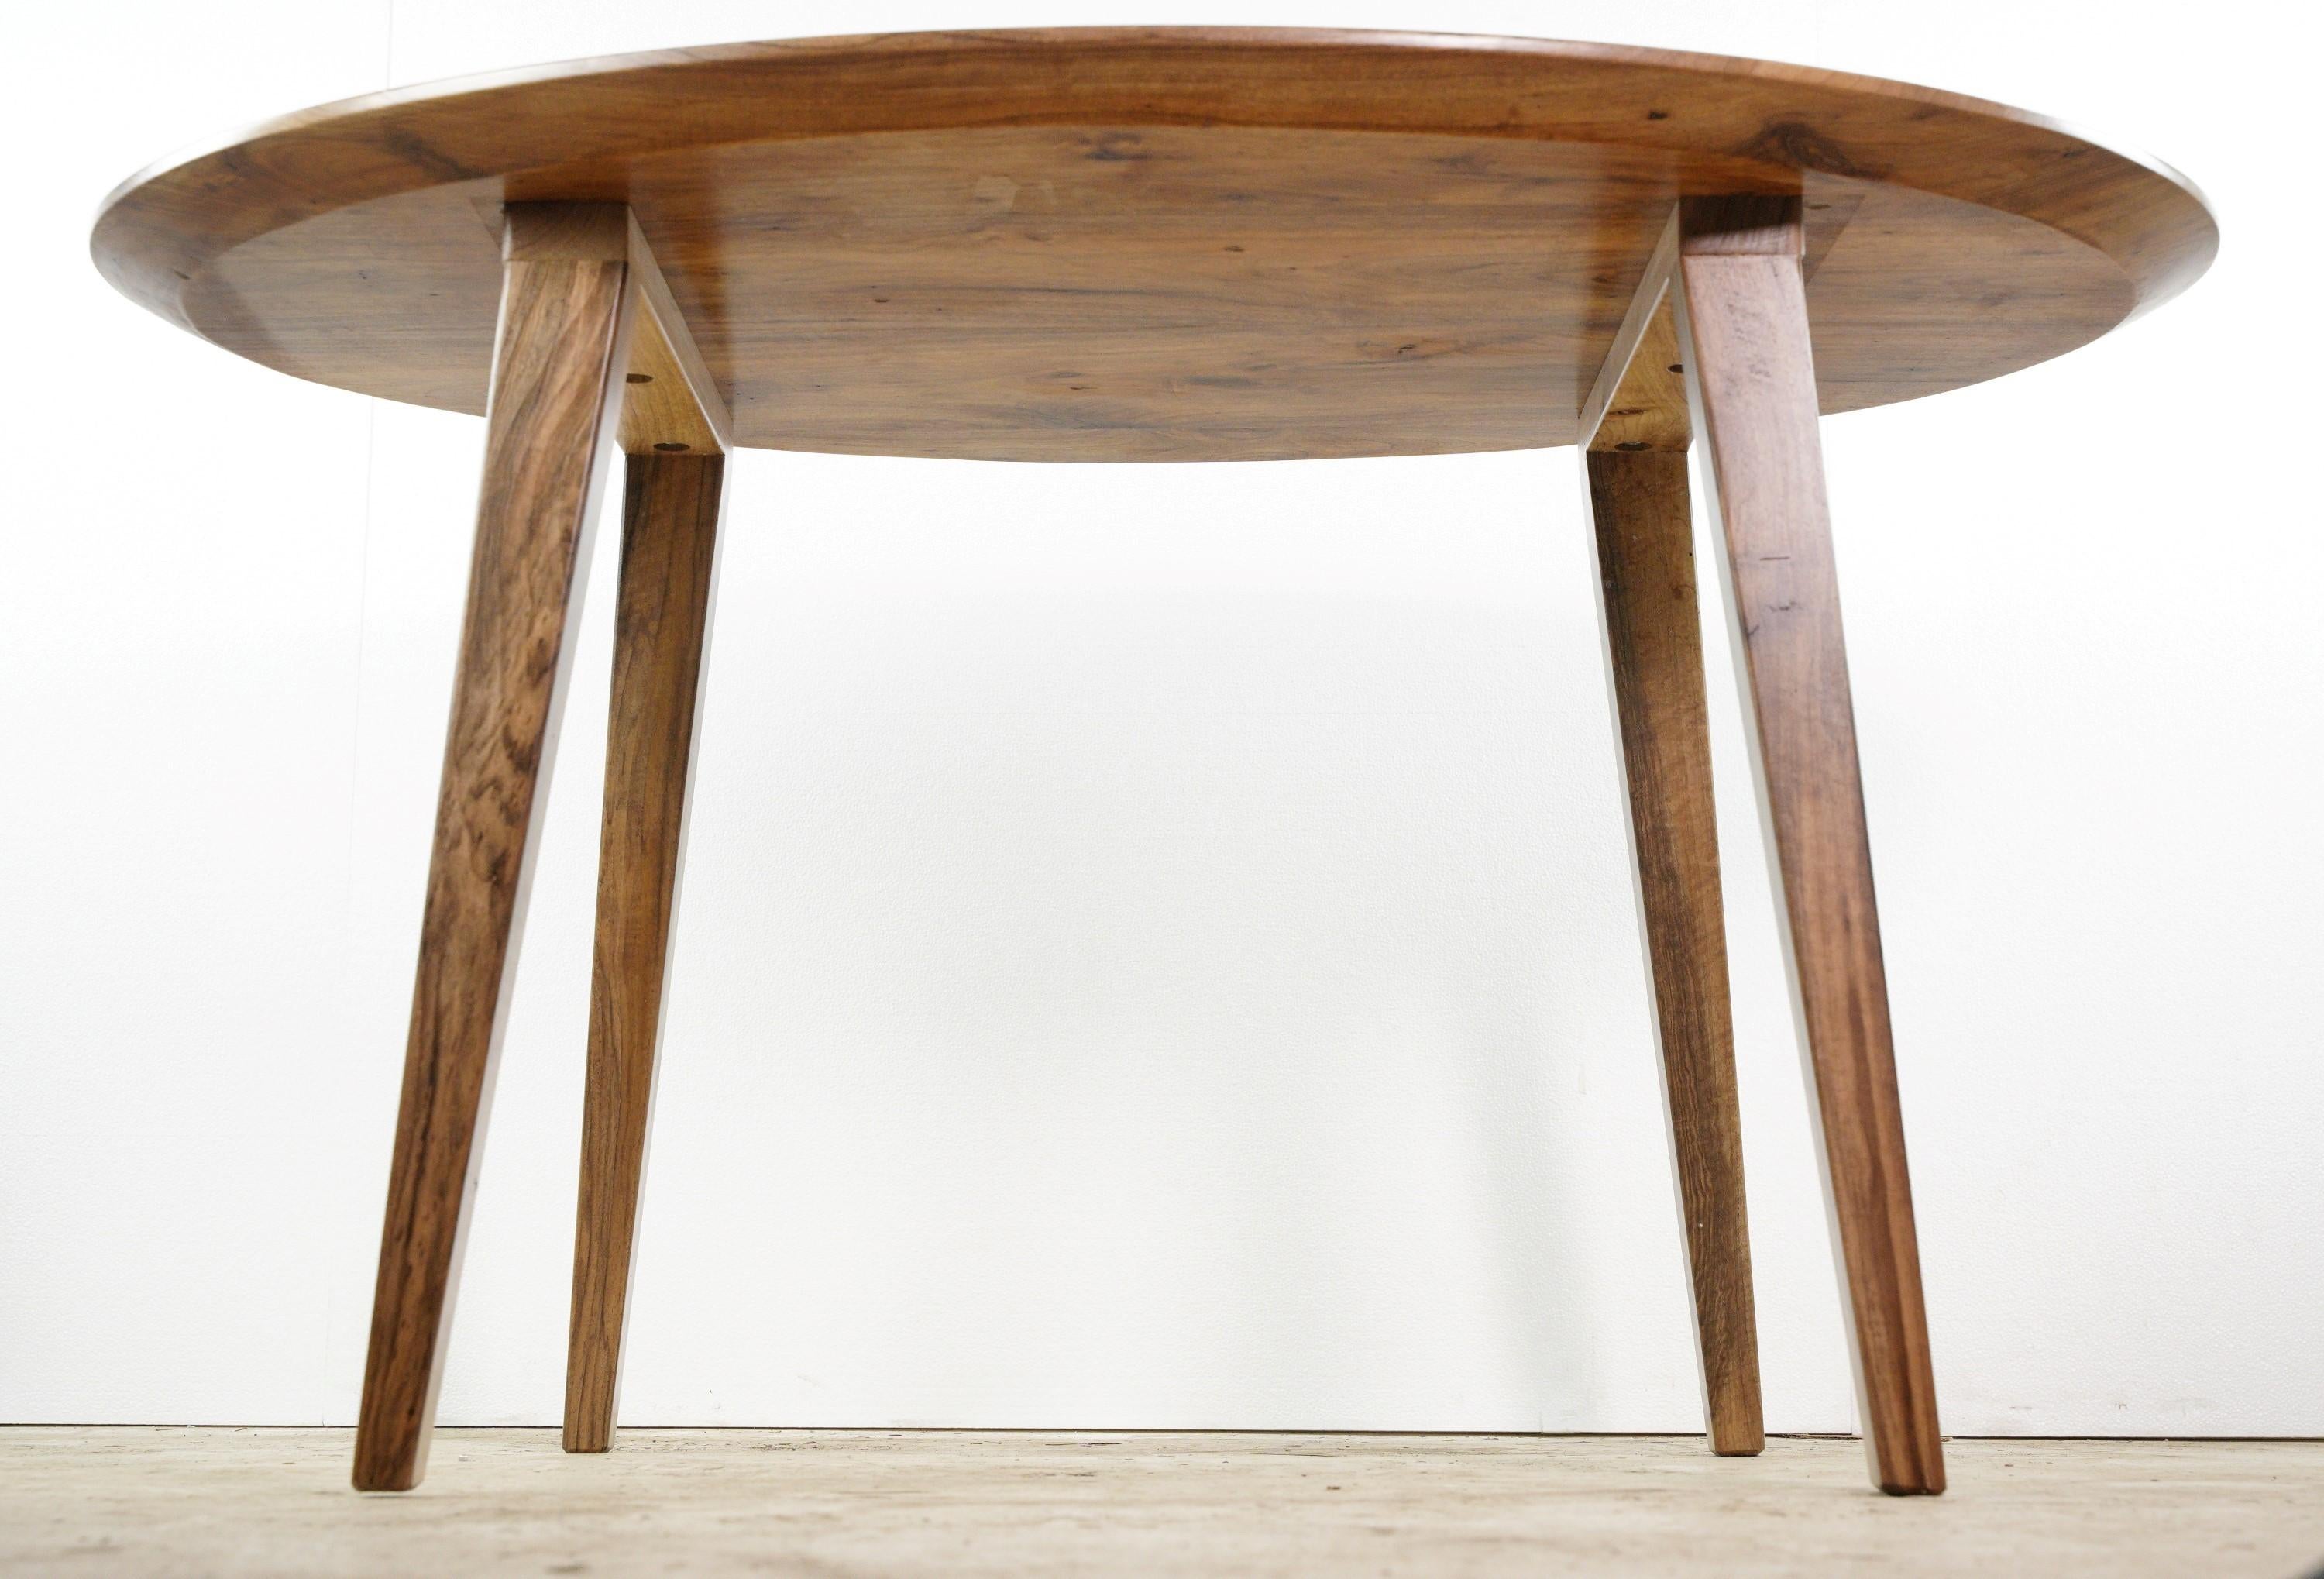 Ovaler Esstisch aus massivem englischem Nussbaum mit spitz zulaufenden Beinen  (Walnuss)